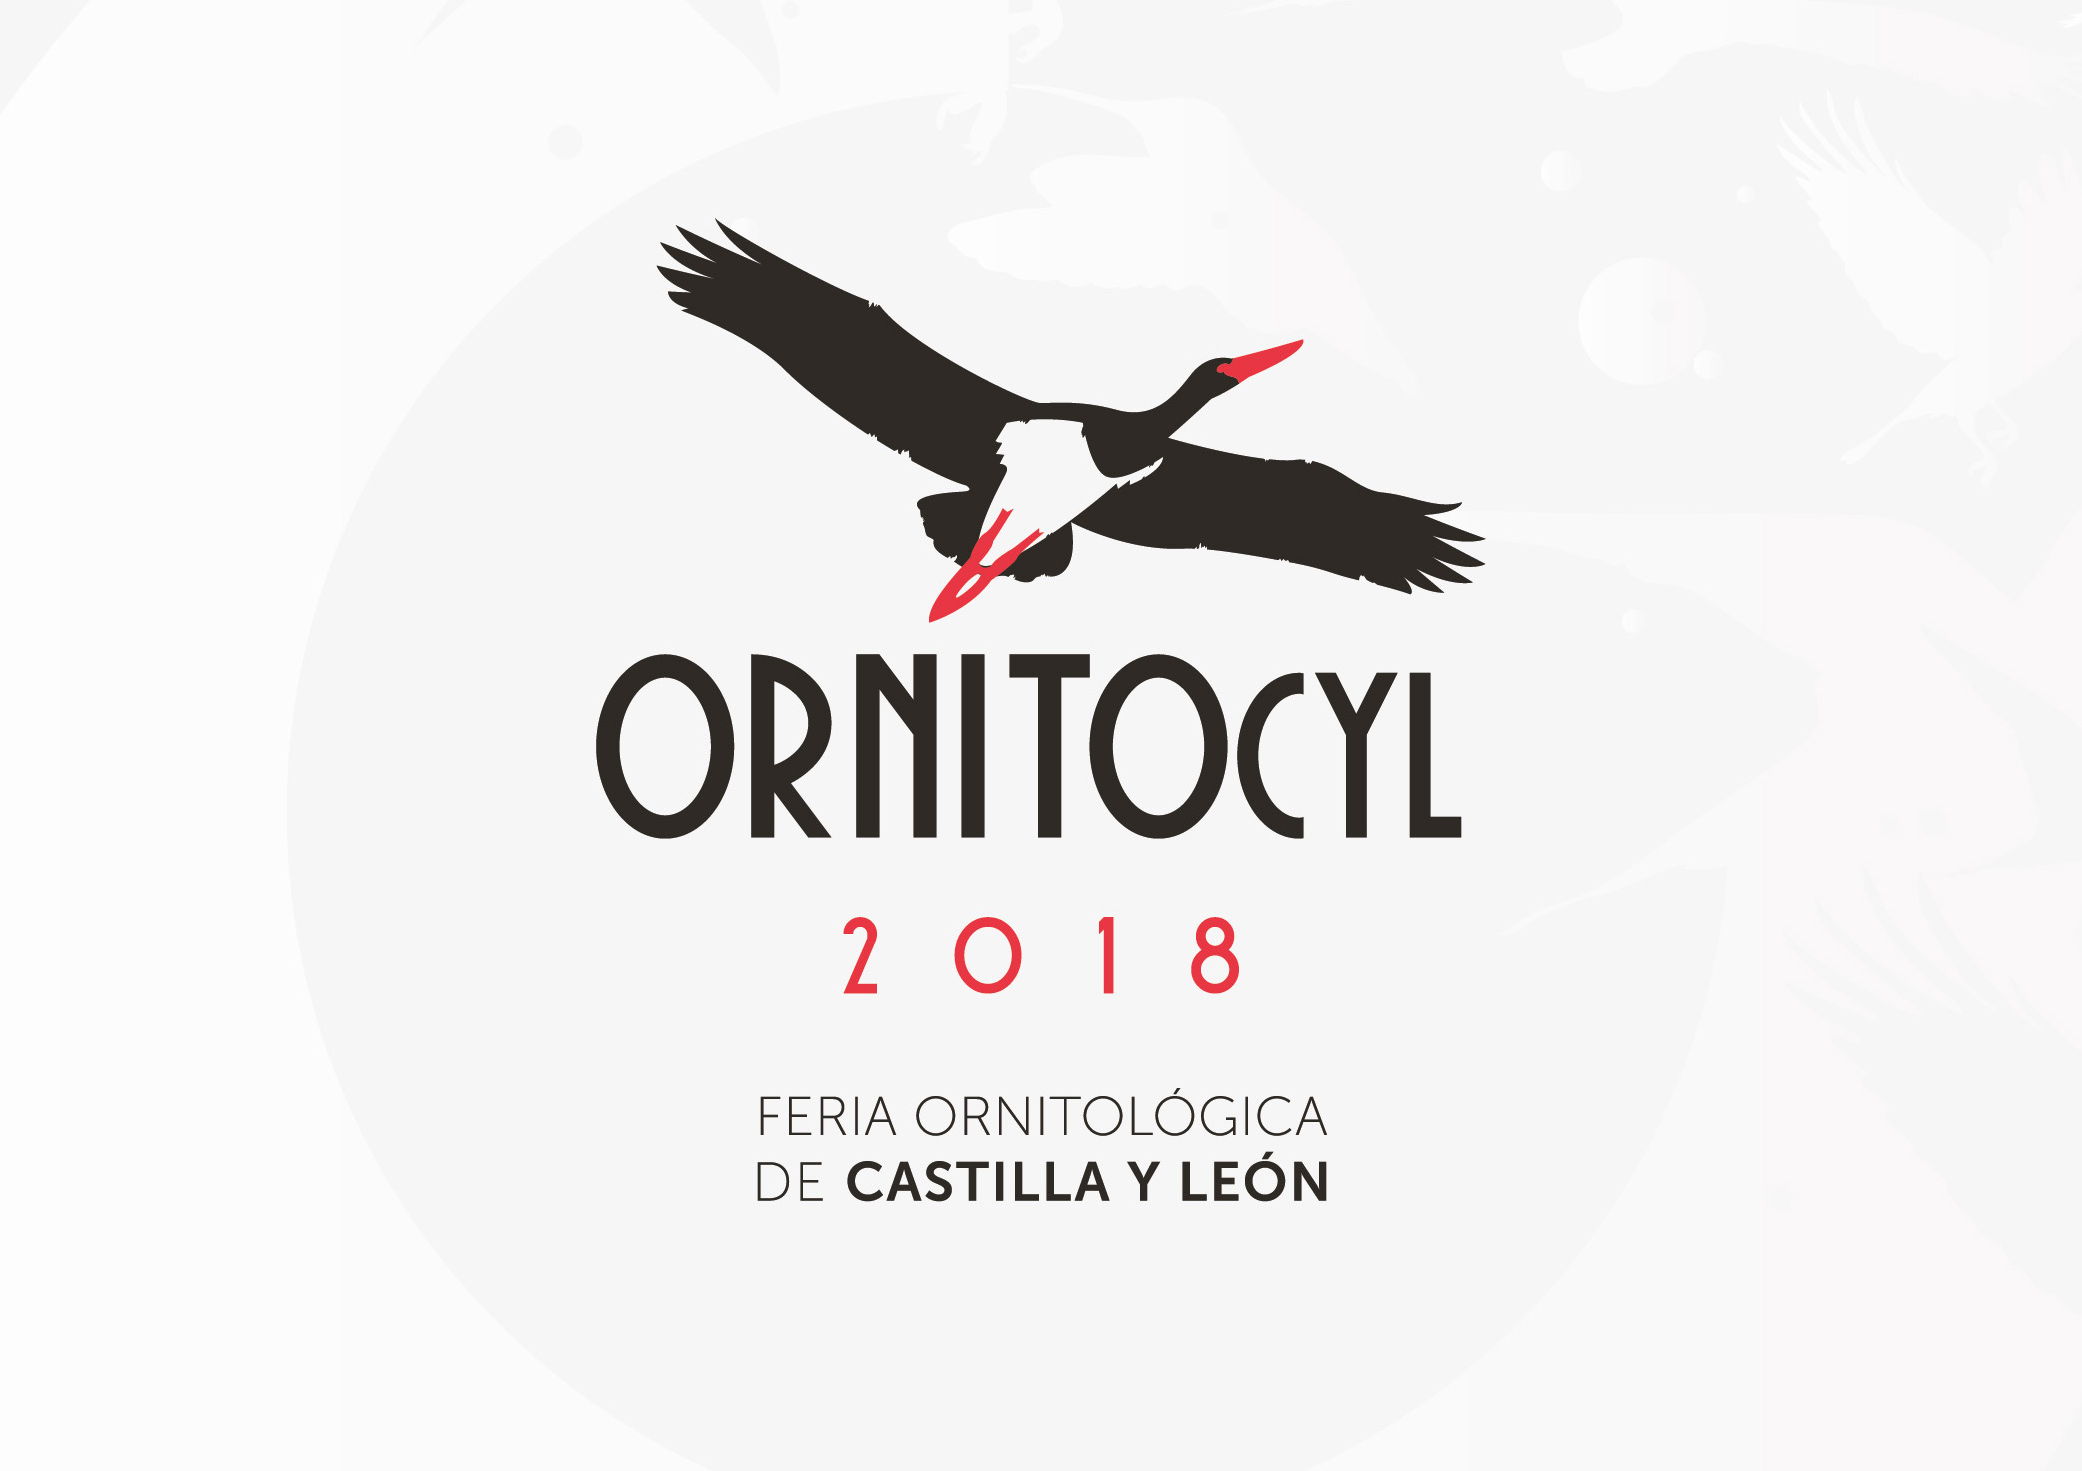 Logo de la feria ornitológica Ornitocyl